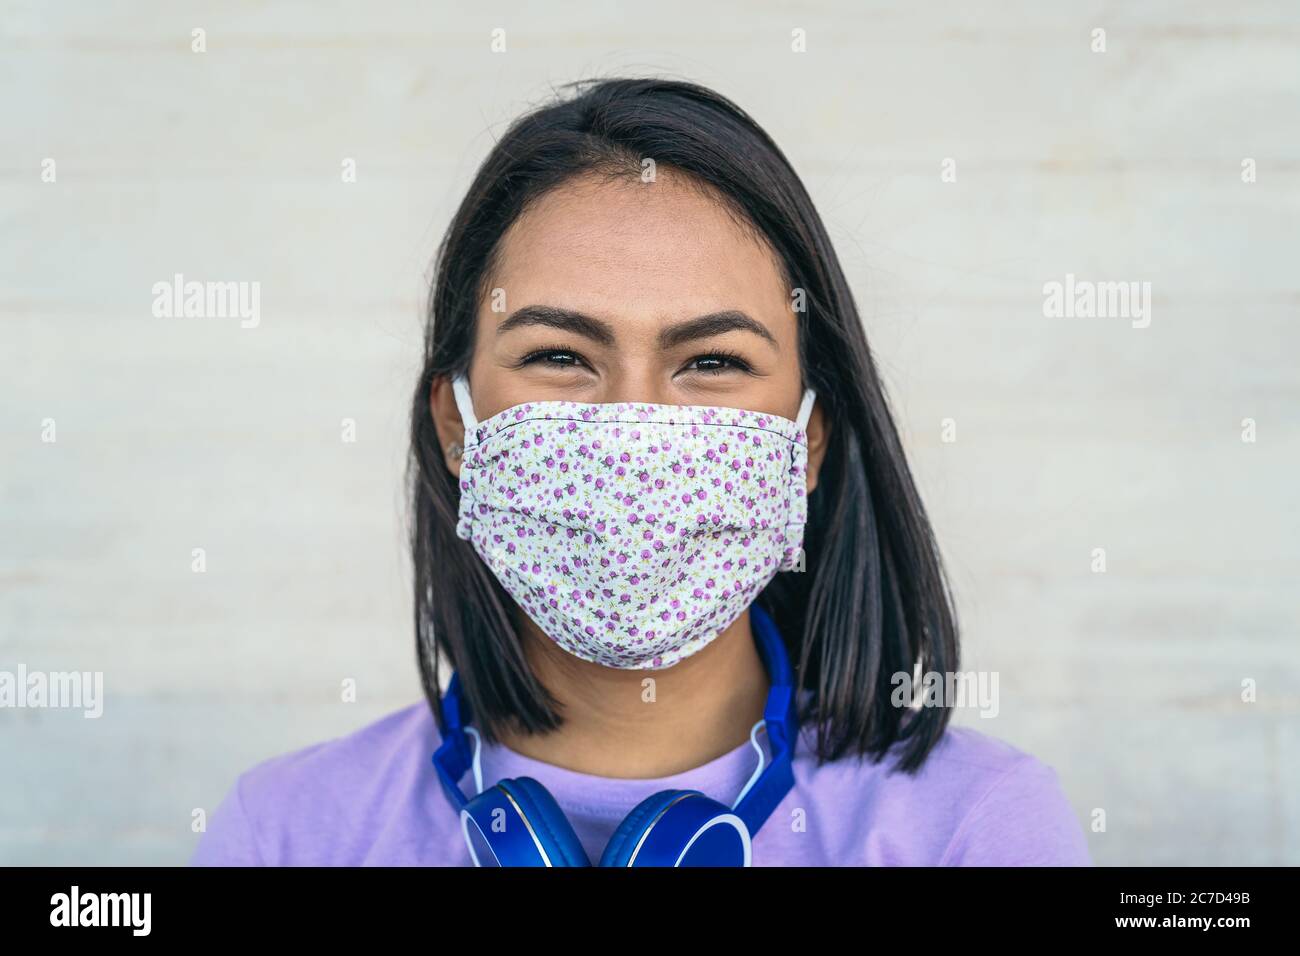 Jeune femme portant un portrait de masque facial - fille latine utilisant un masque facial protecteur pour prévenir la propagation du virus corona Banque D'Images